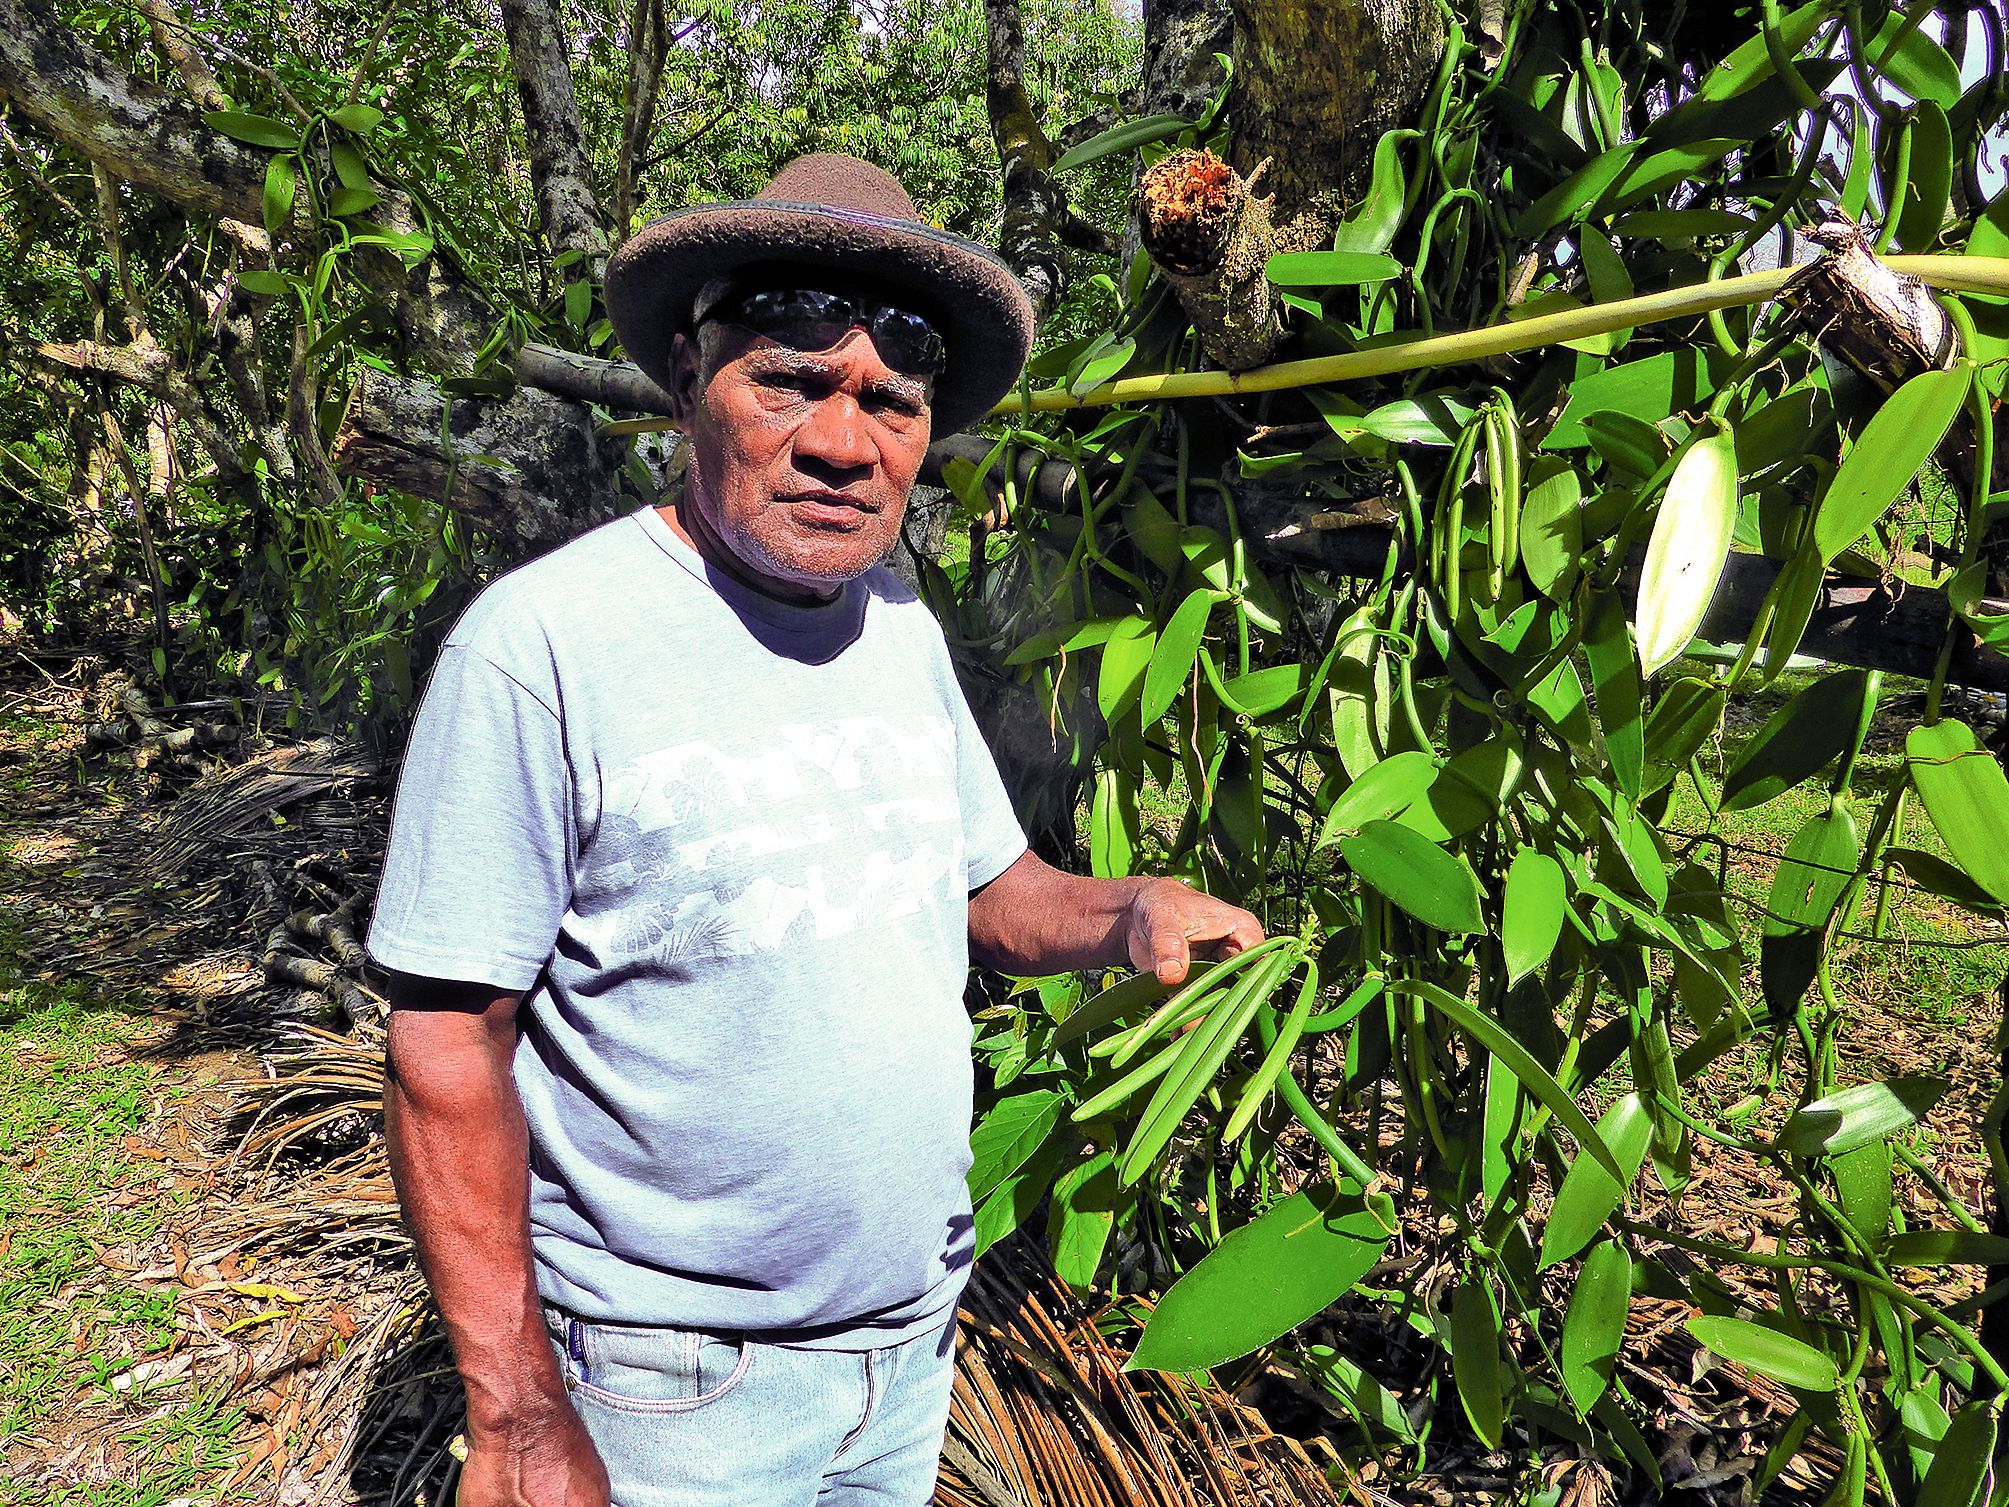 Wassaloup Carawiane travaille aussi son champ traditionnel pour les ignames, taros et autres bananes destinés à sa consommation personnelle.